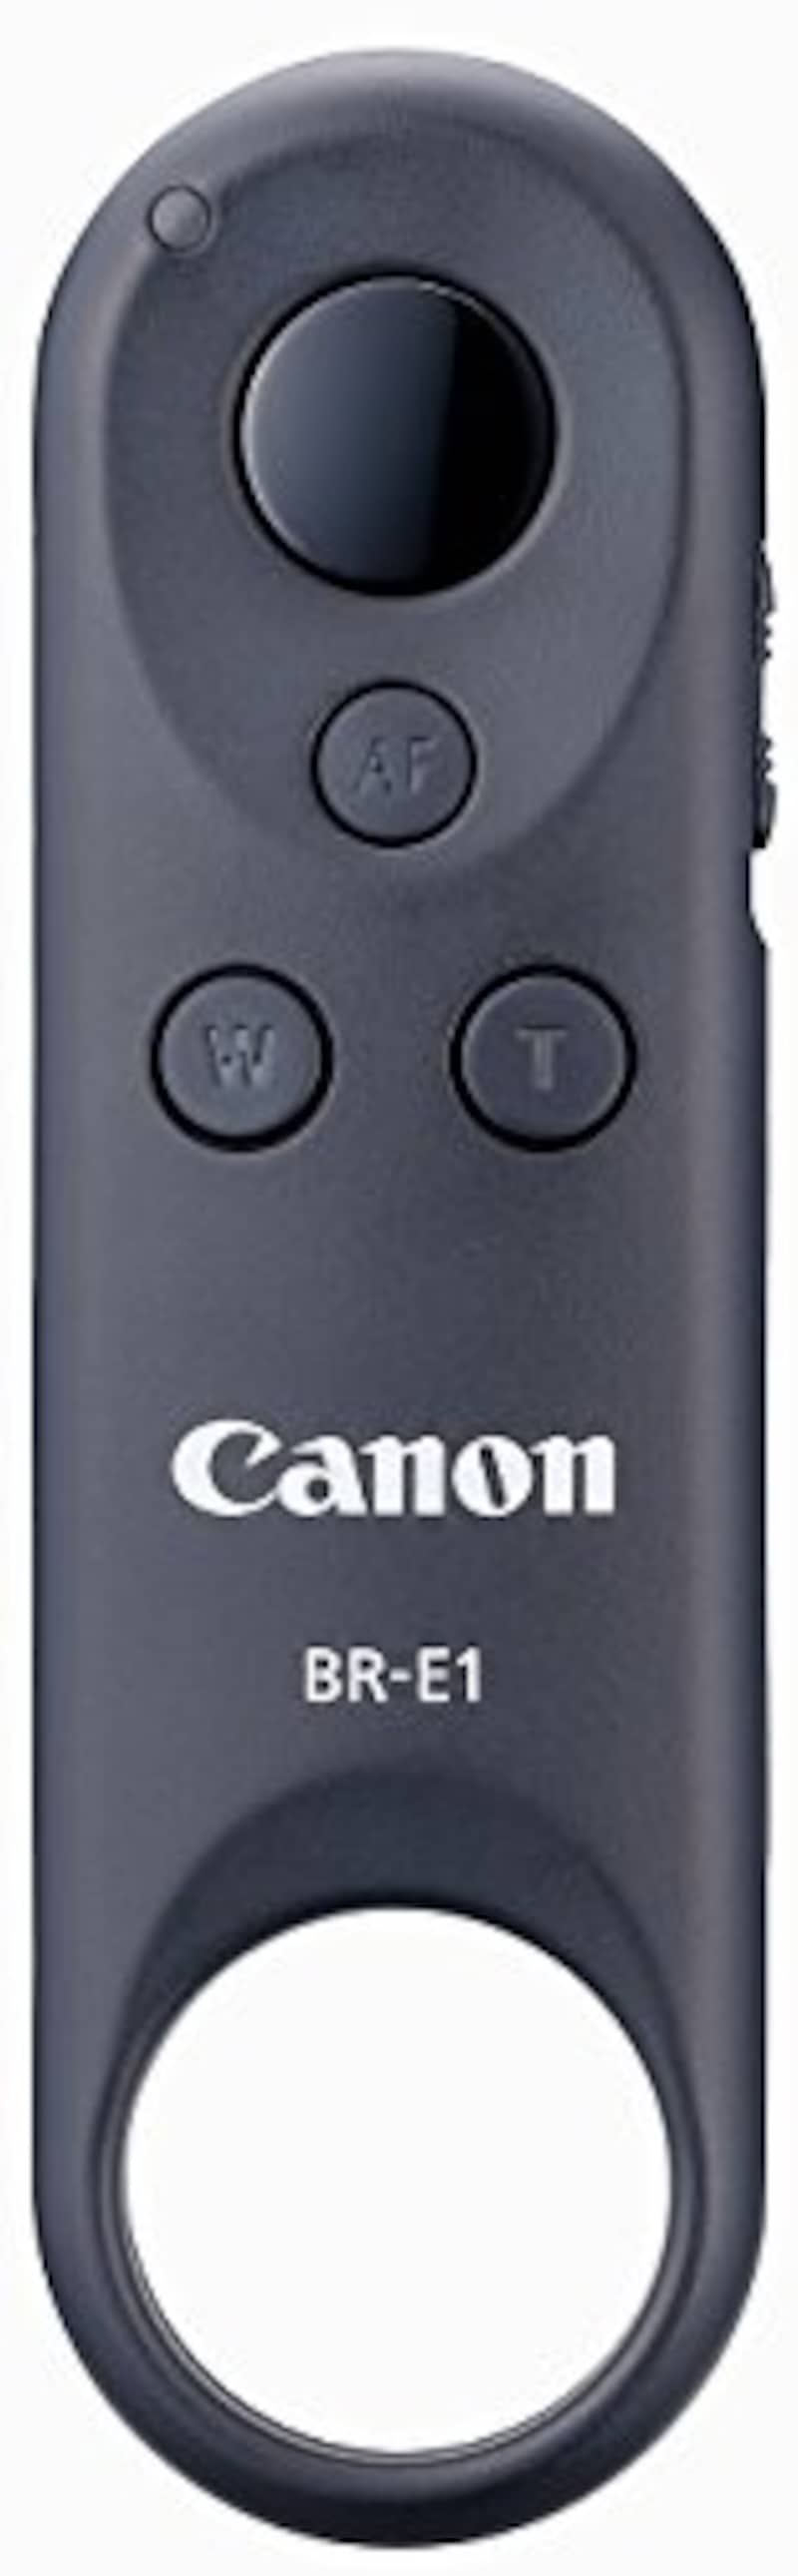 Canon,ワイヤレスリモートコントローラー,BR-E1